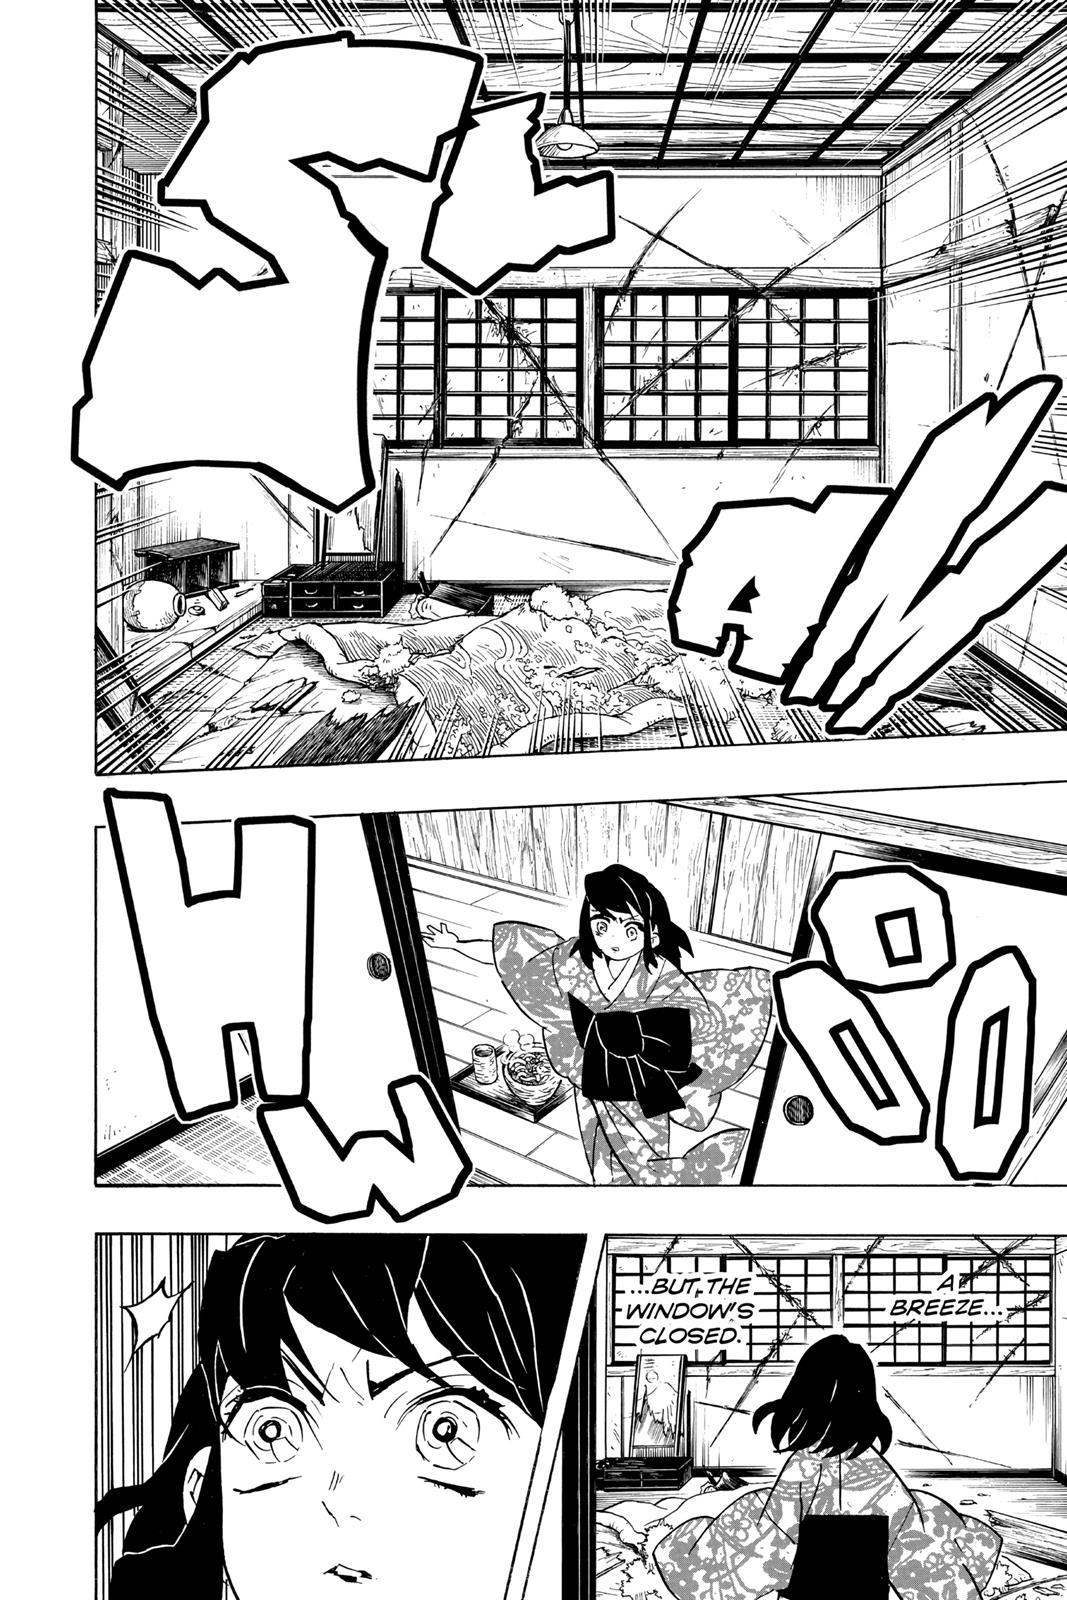 Demon Slayer Manga Manga Chapter - 73 - image 4